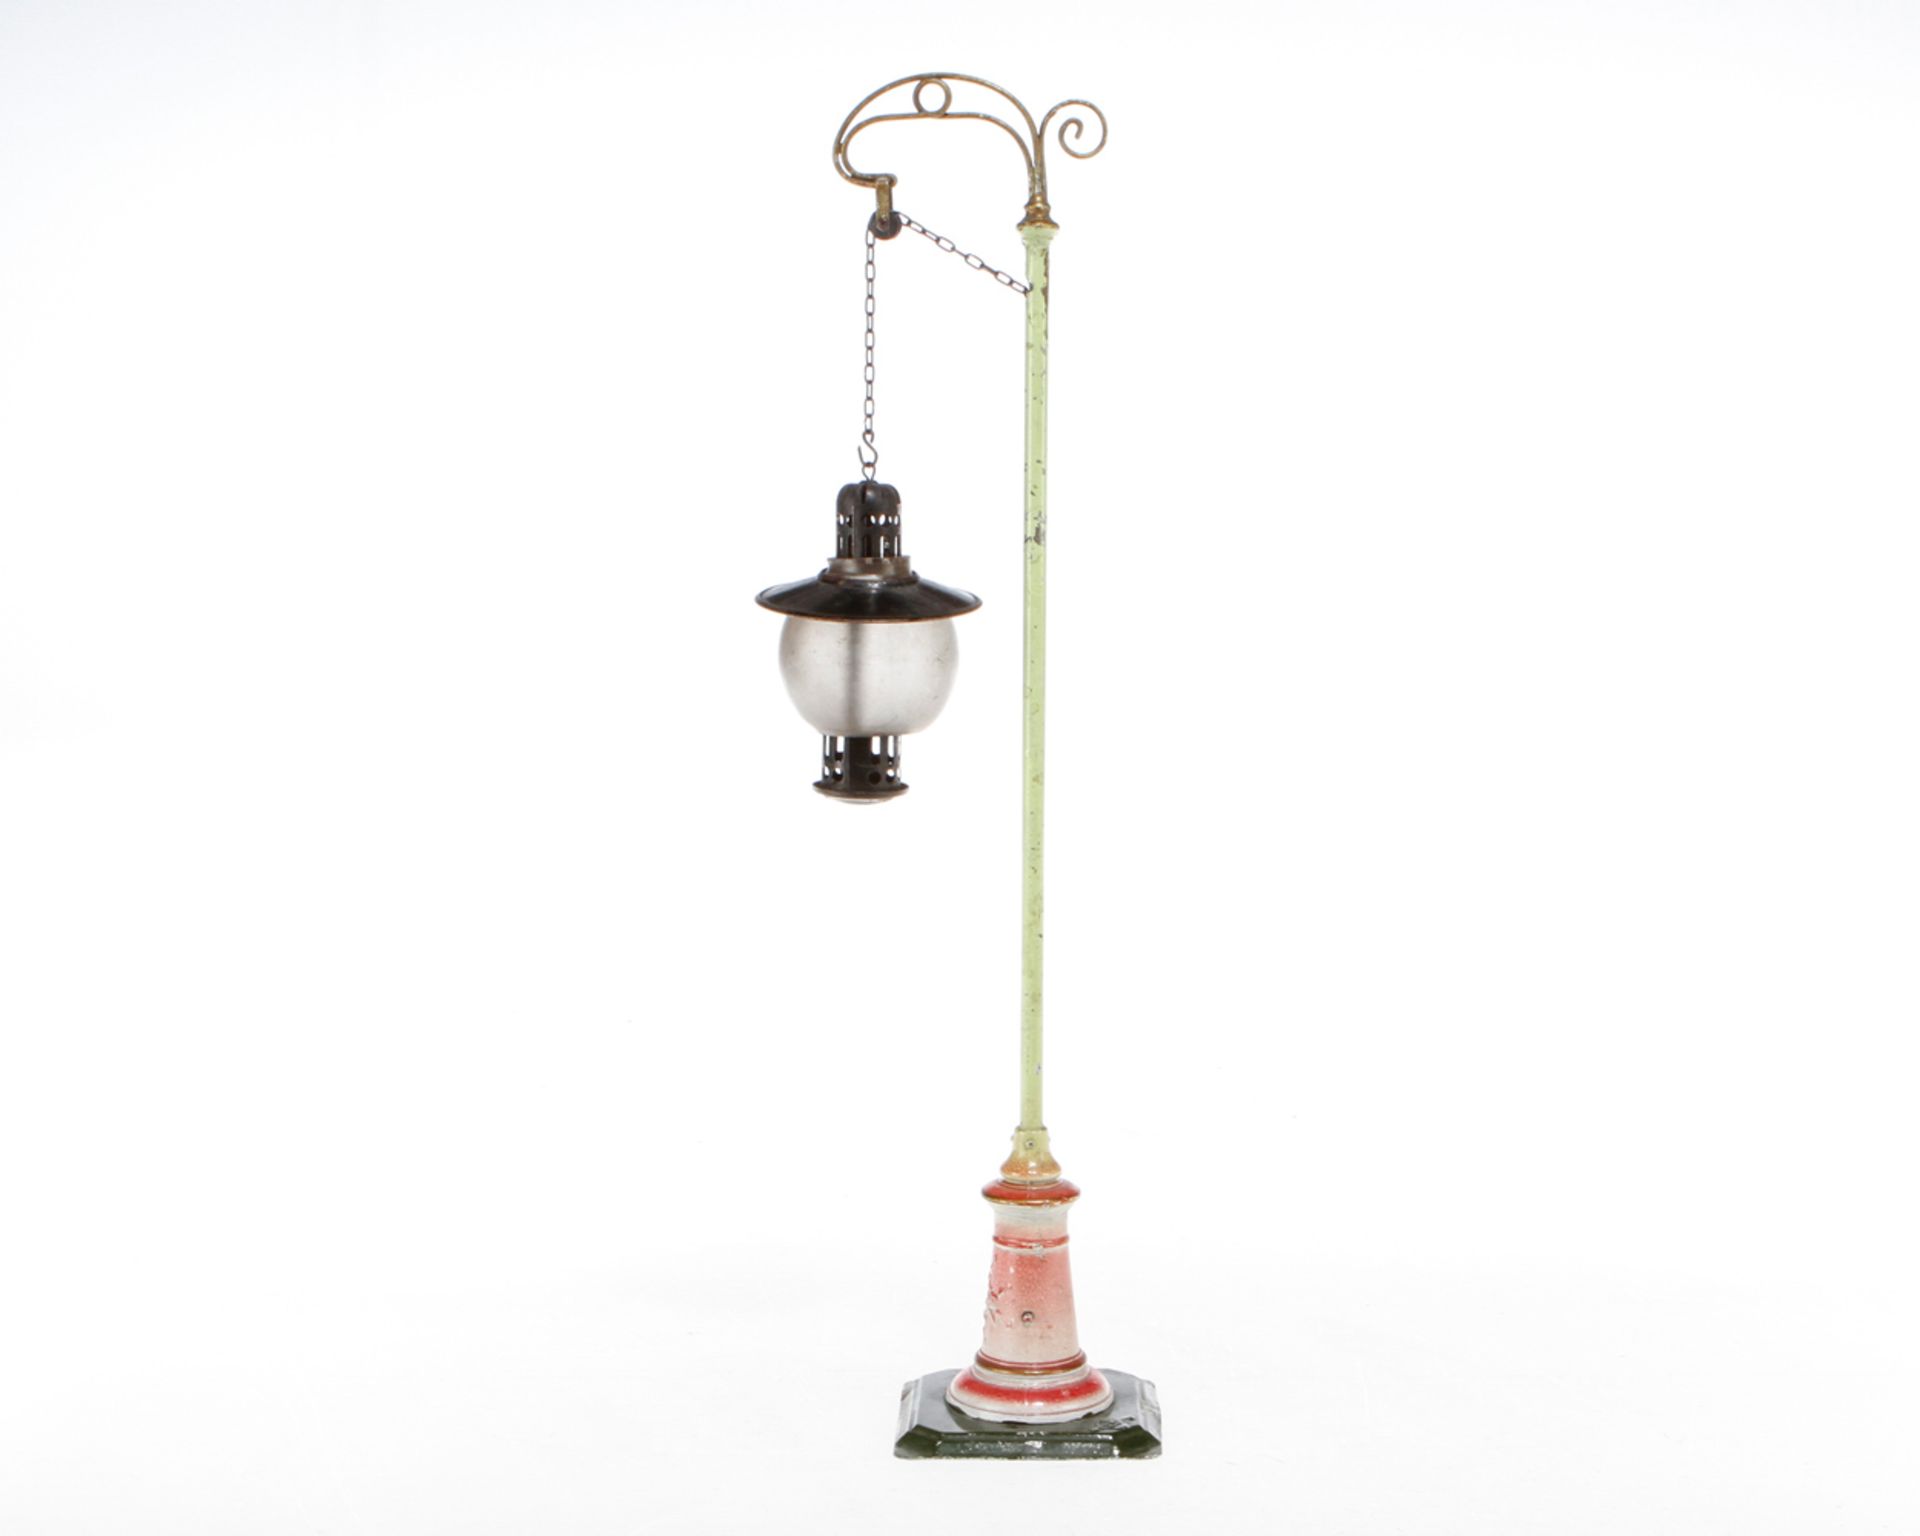 Bing Bogenlampe, uralt, handlackiert, für Kerzenbeleuchtung, mit Kettenzug, Lackschäden, H 41, Z 3